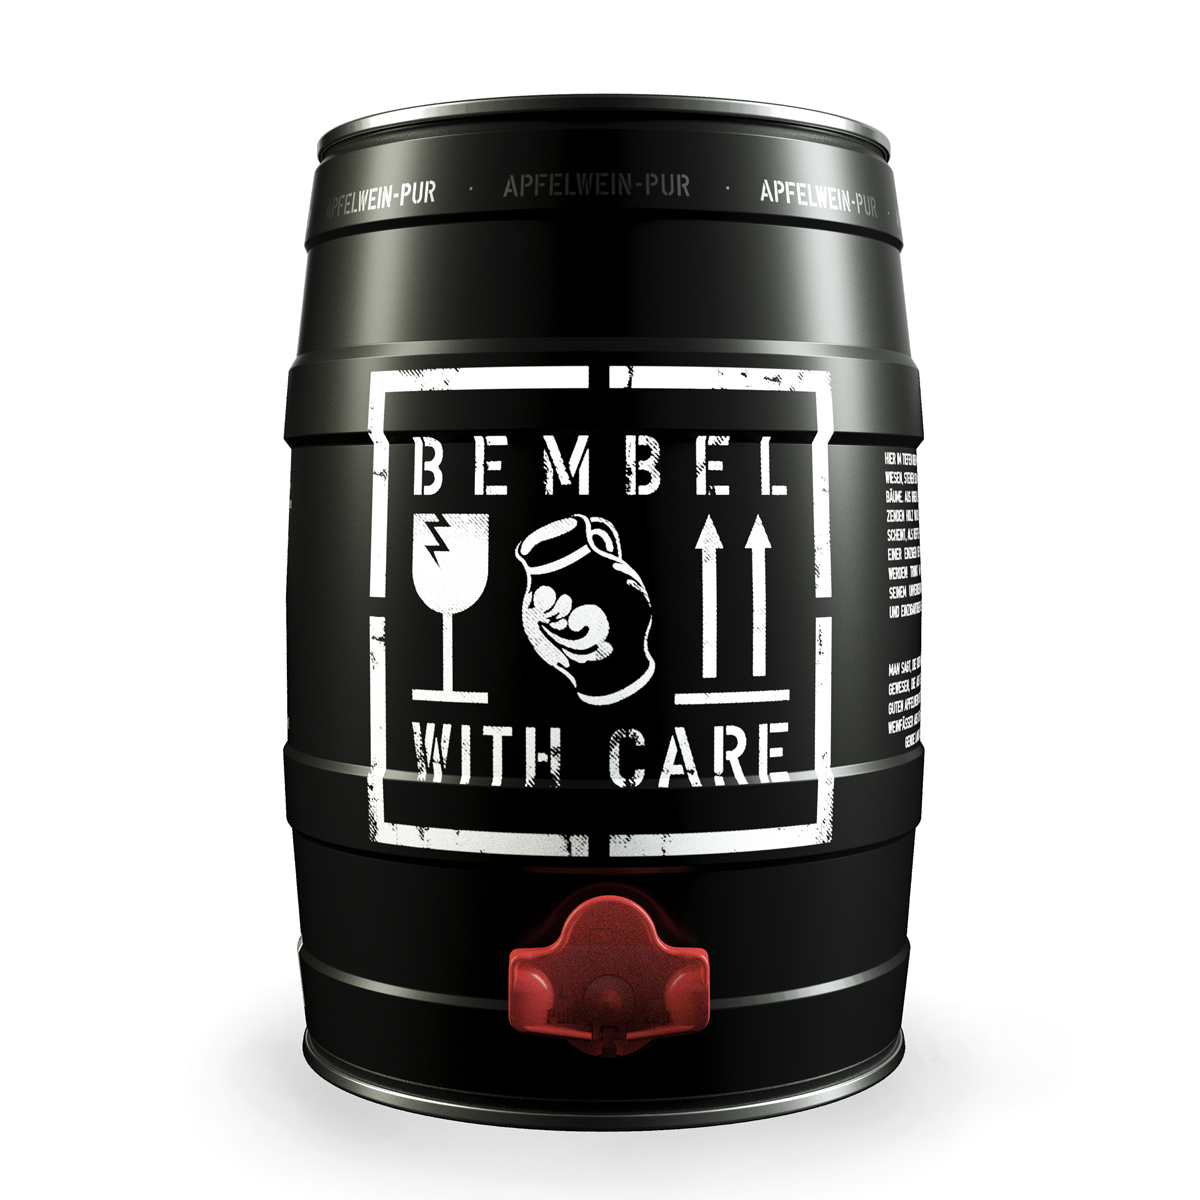 BEMBEL-WITH-CARE im 5L-Fass: füllt die Lücke zwischen Bier und Wein. Unser Apfelwein aus dem Odenwald - die Antwort auf Cider.